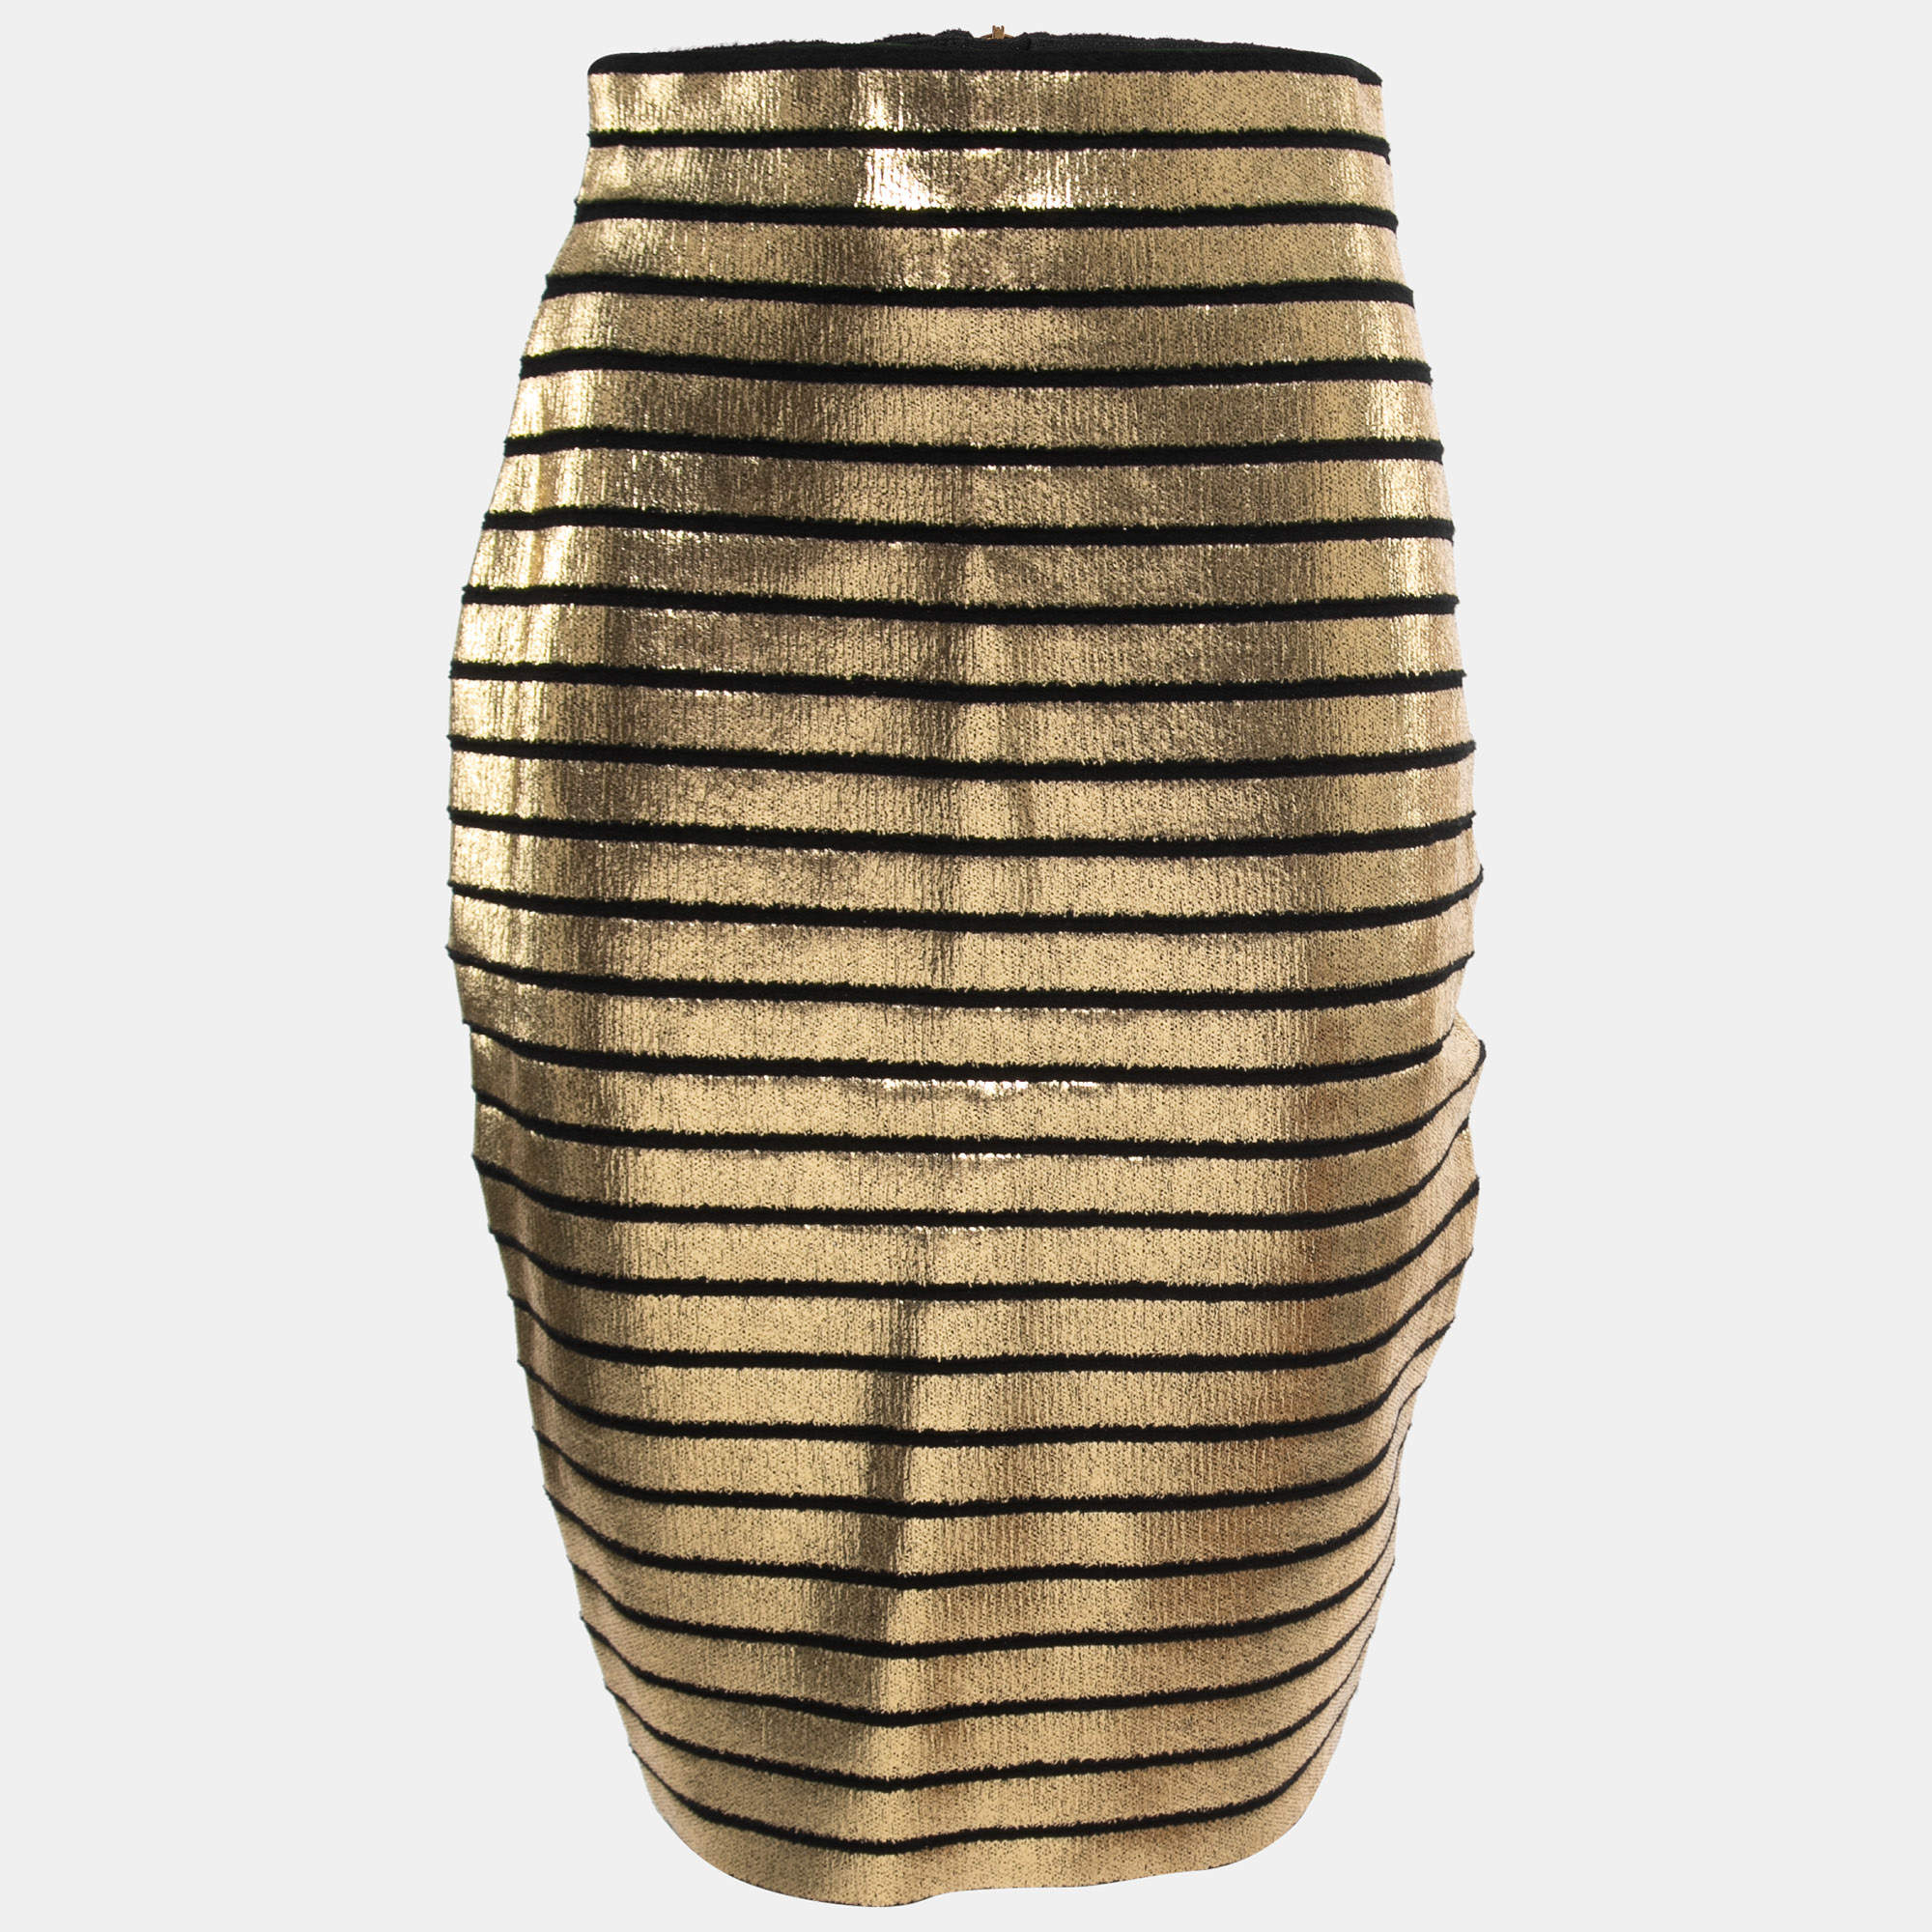 Louis Vuitton Sequin Stripes Pencil Skirt